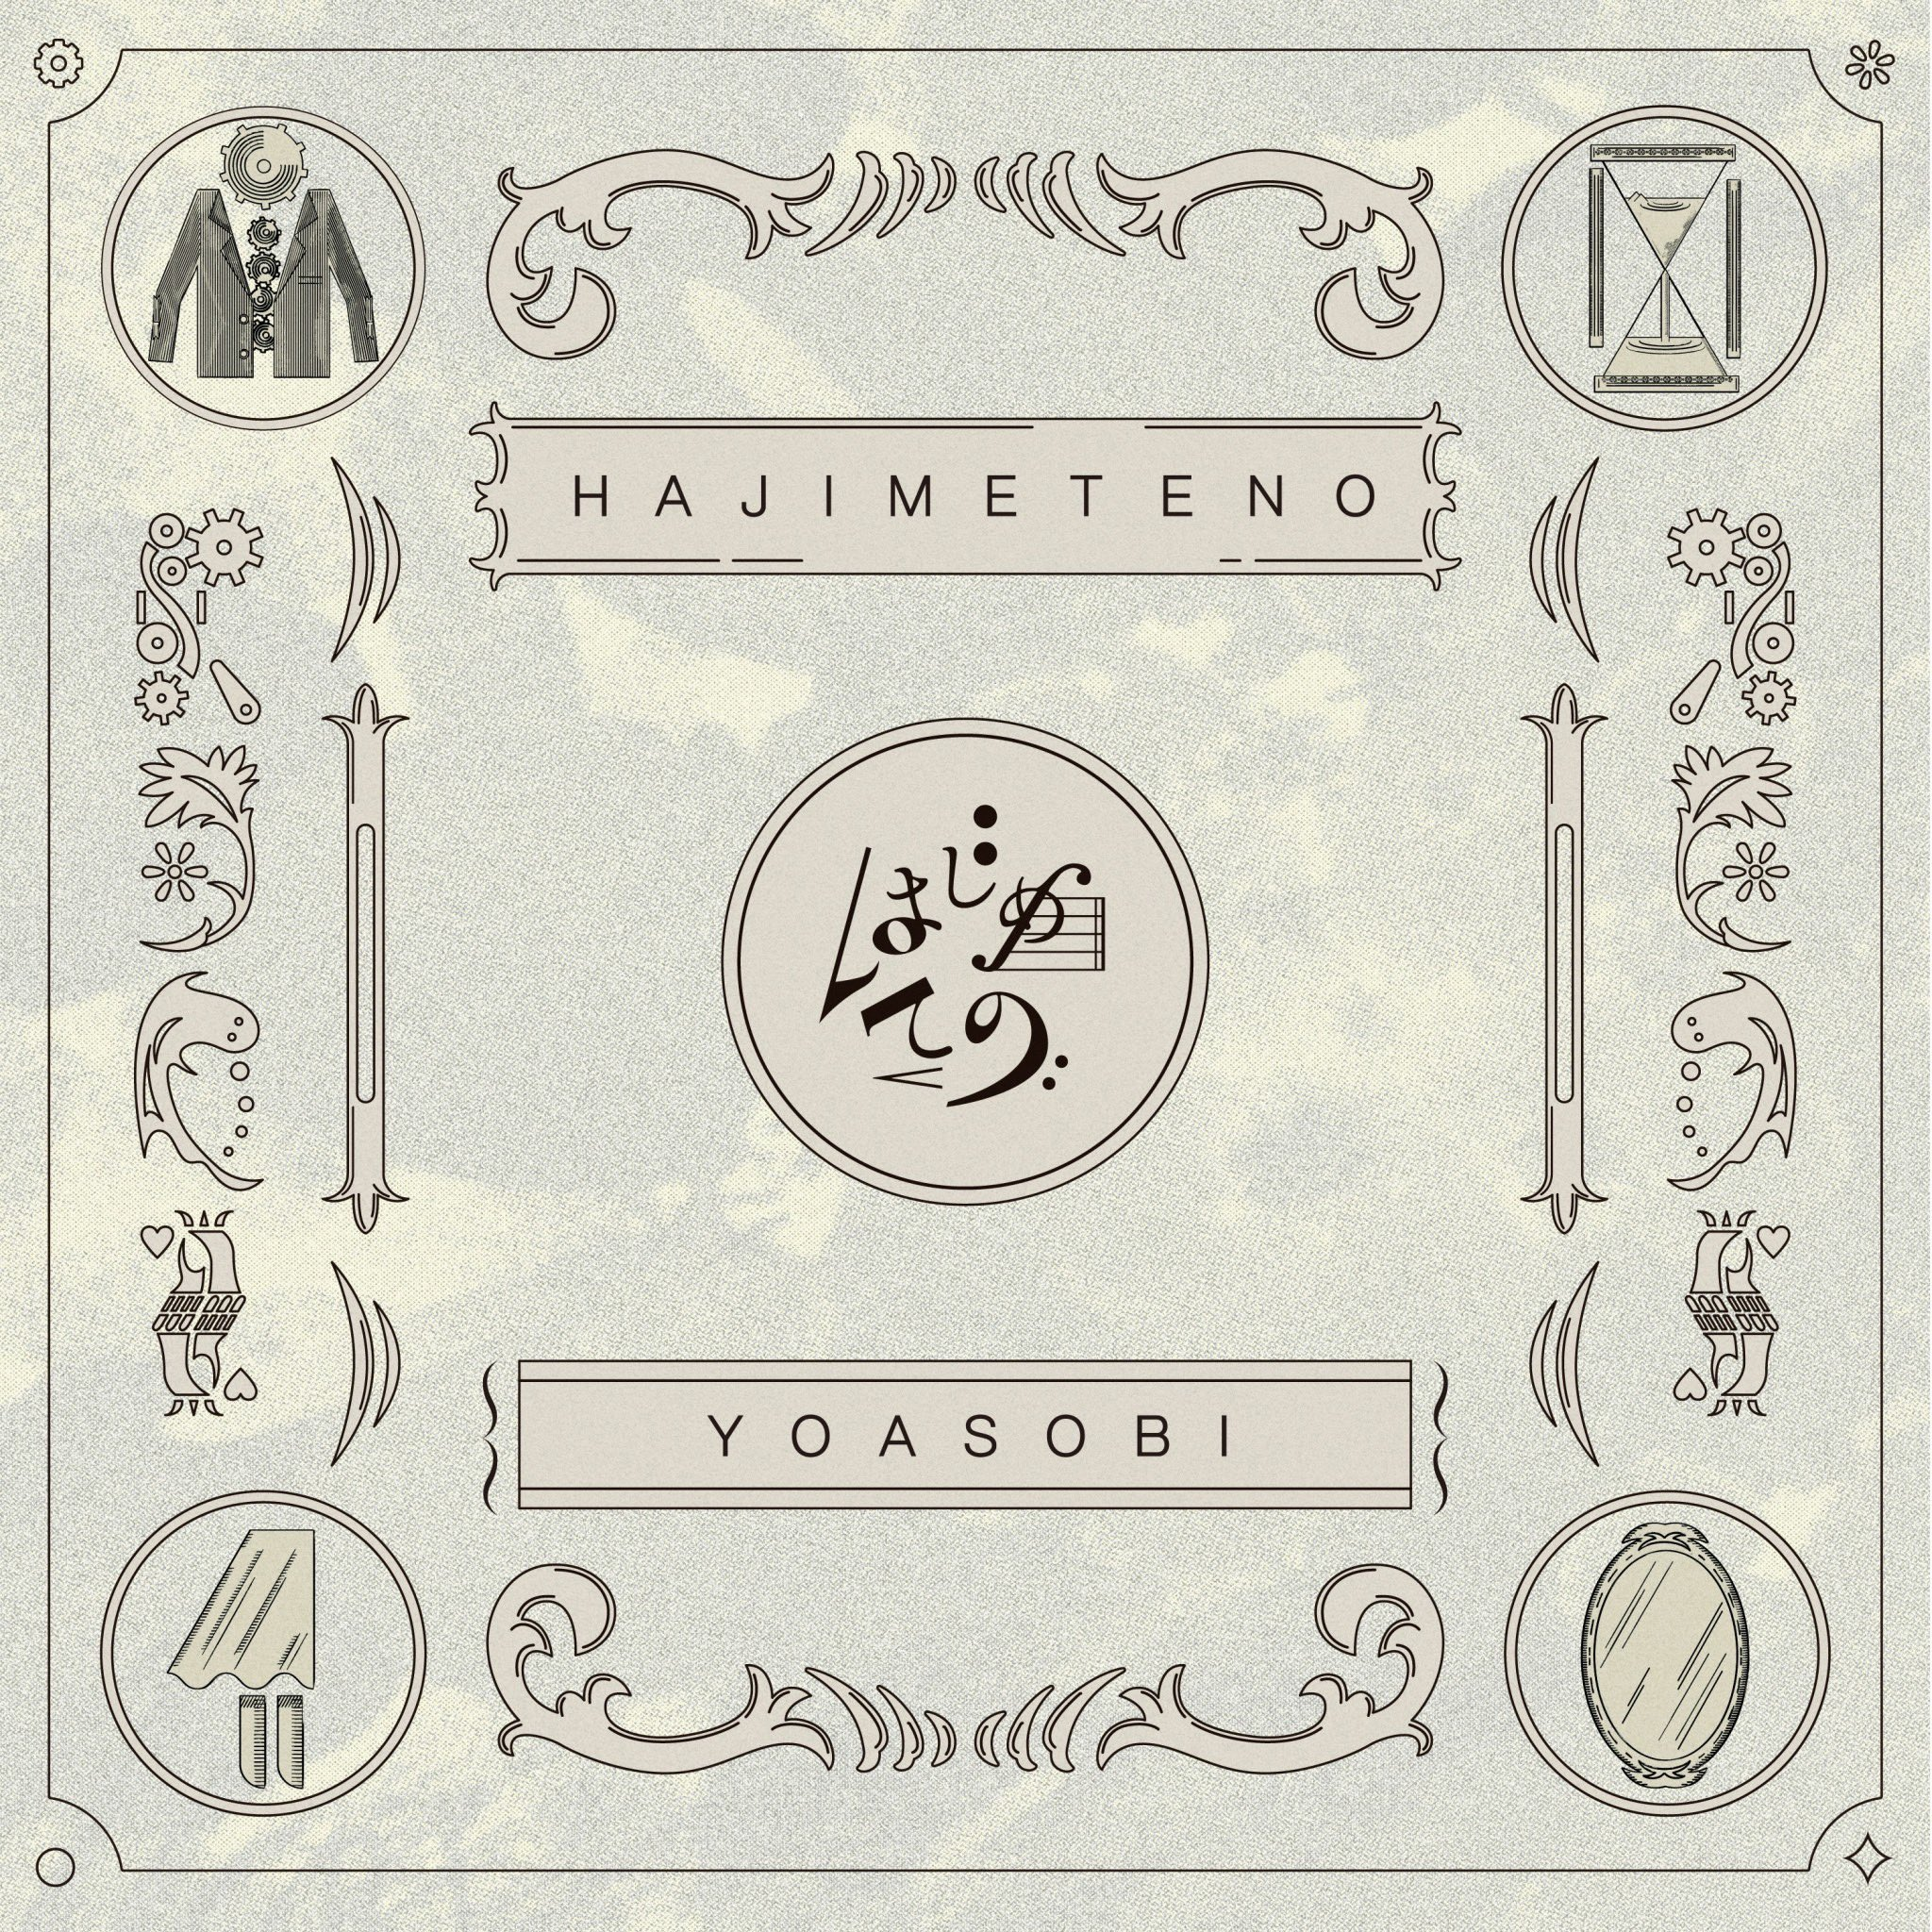 YOASOBI Hajimete No cover artwork